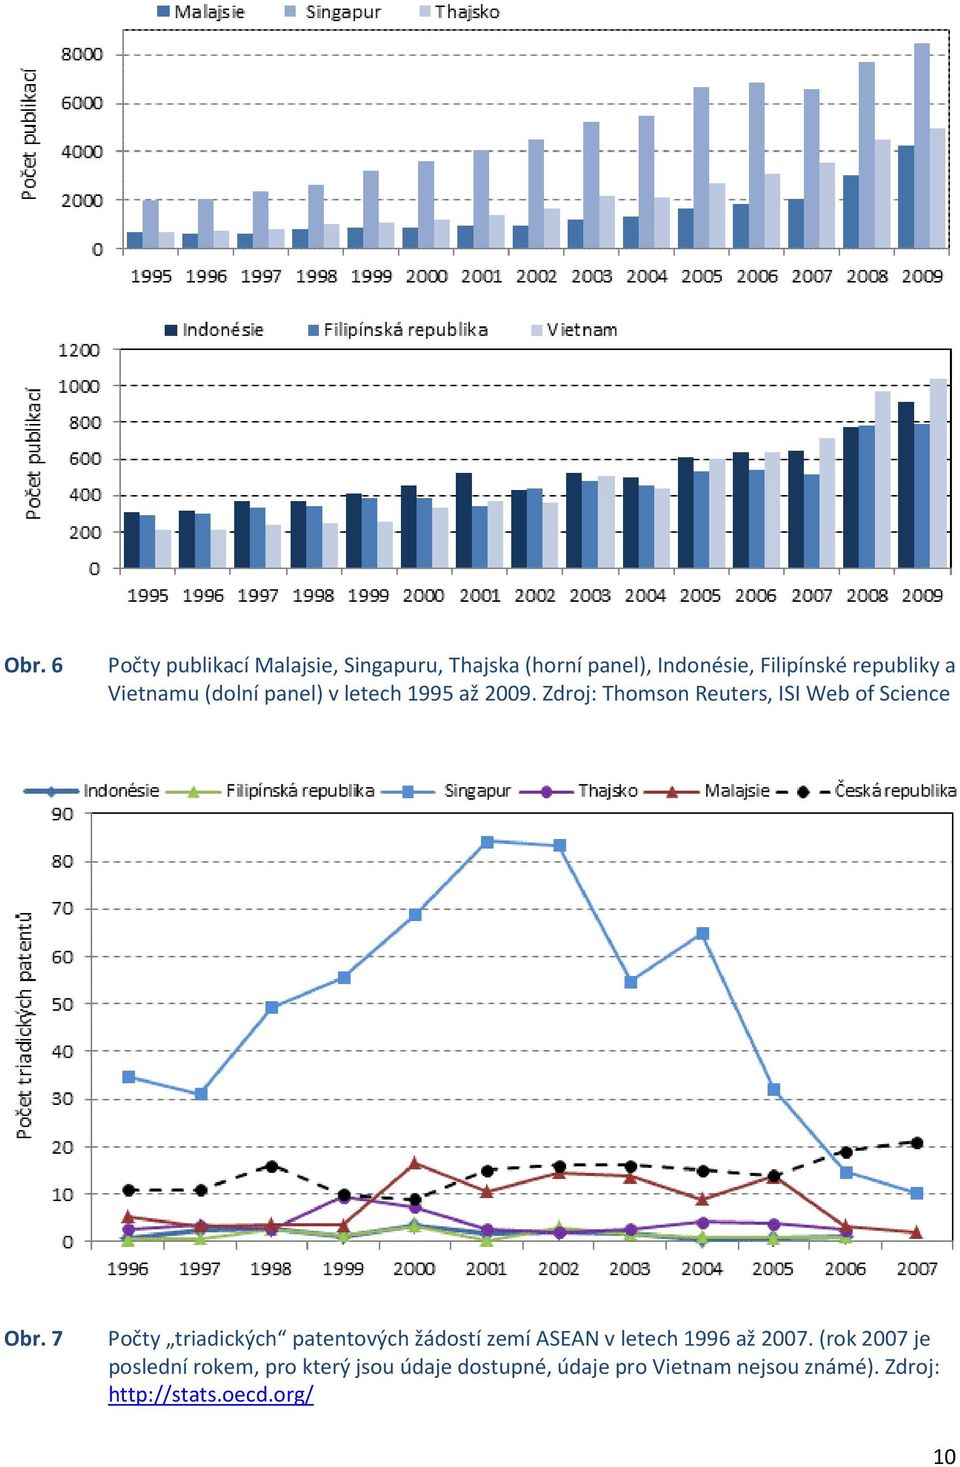 7 Počty triadických patentových žádostí zemí ASEAN v letech 1996 až 2007.